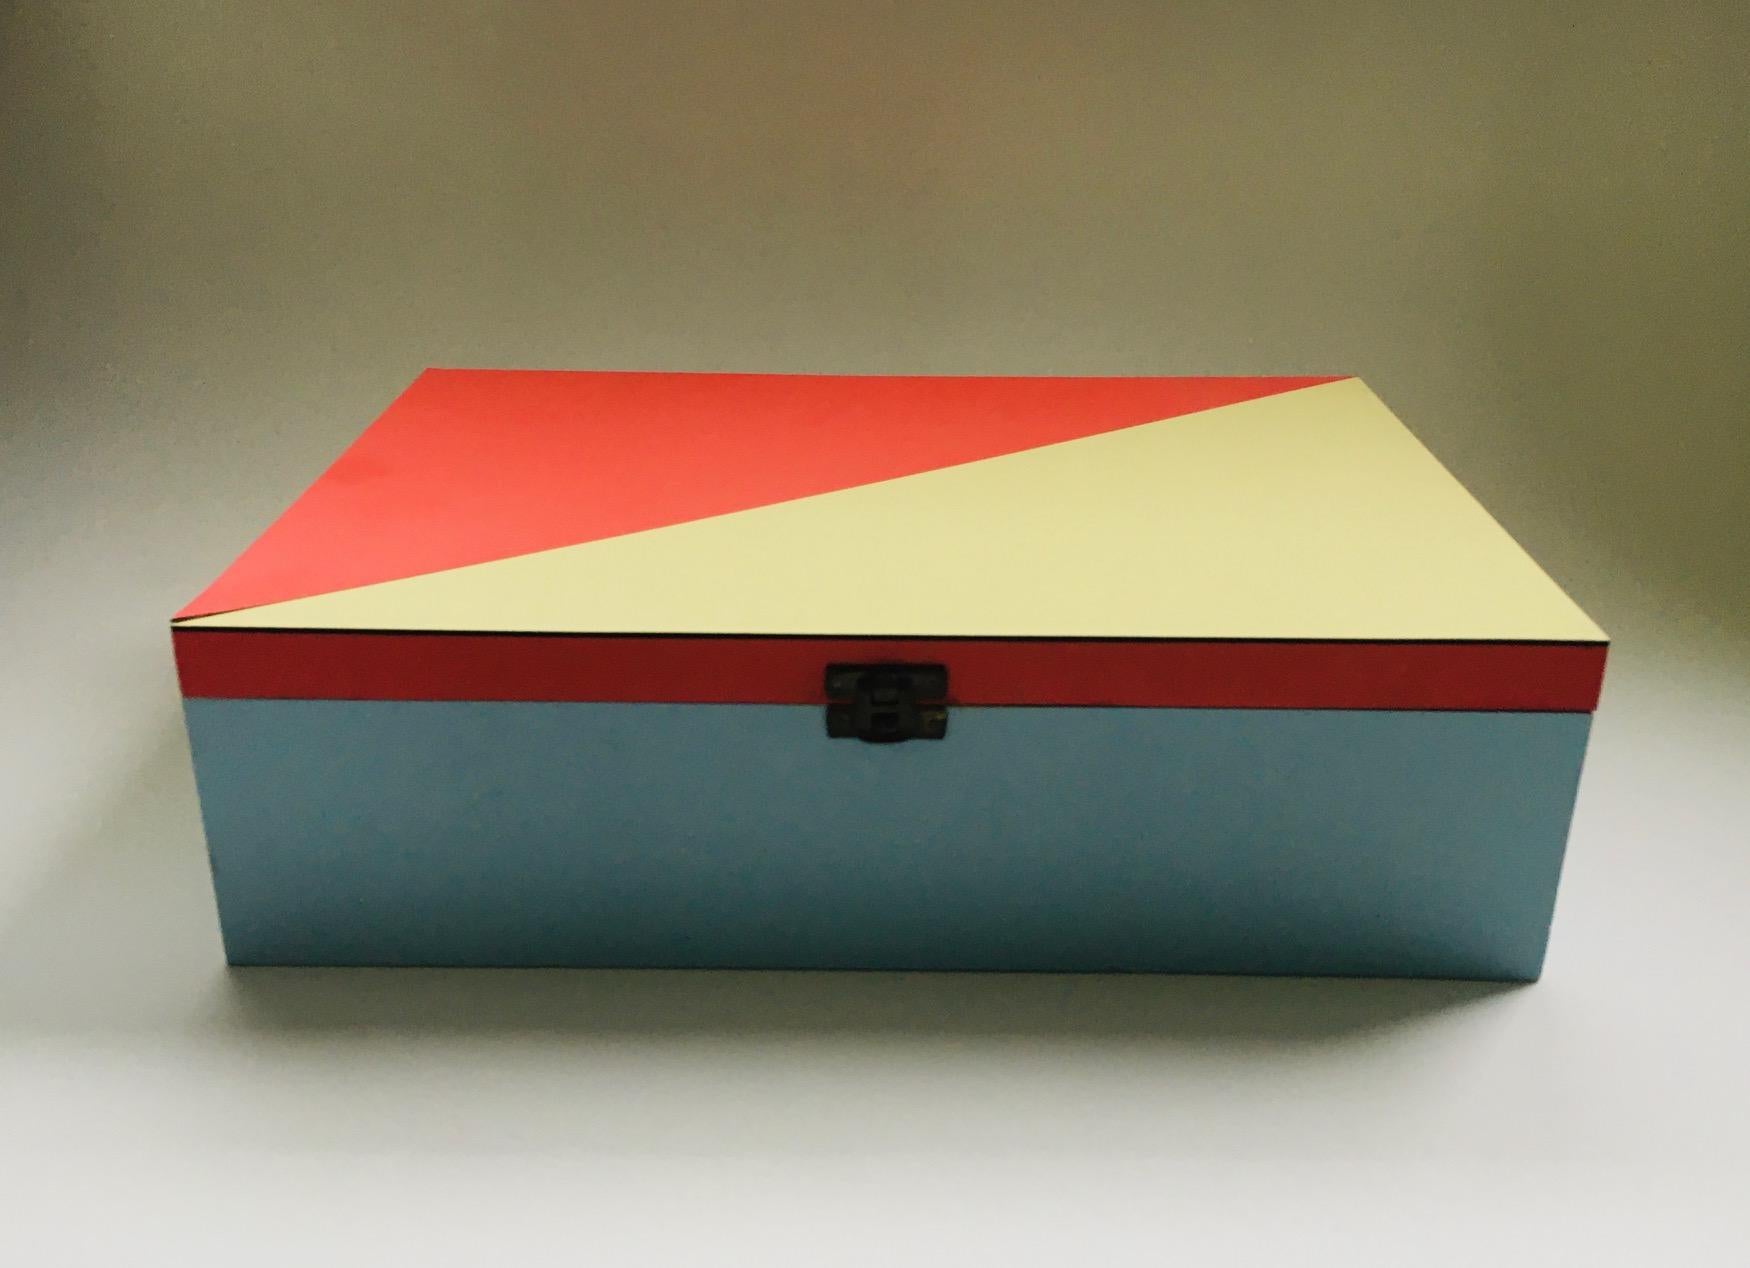 Vintage Midcentury Modern Dutch Design im Stil des DE STIJL Modernism Briefkastens. Hergestellt in Holland in den 1950er Jahren. Kiste aus Holz, mit hellblauem, leicht rotem und hellgelbem Laminat in geometrischem Muster. Innen komplett aus Holz mit